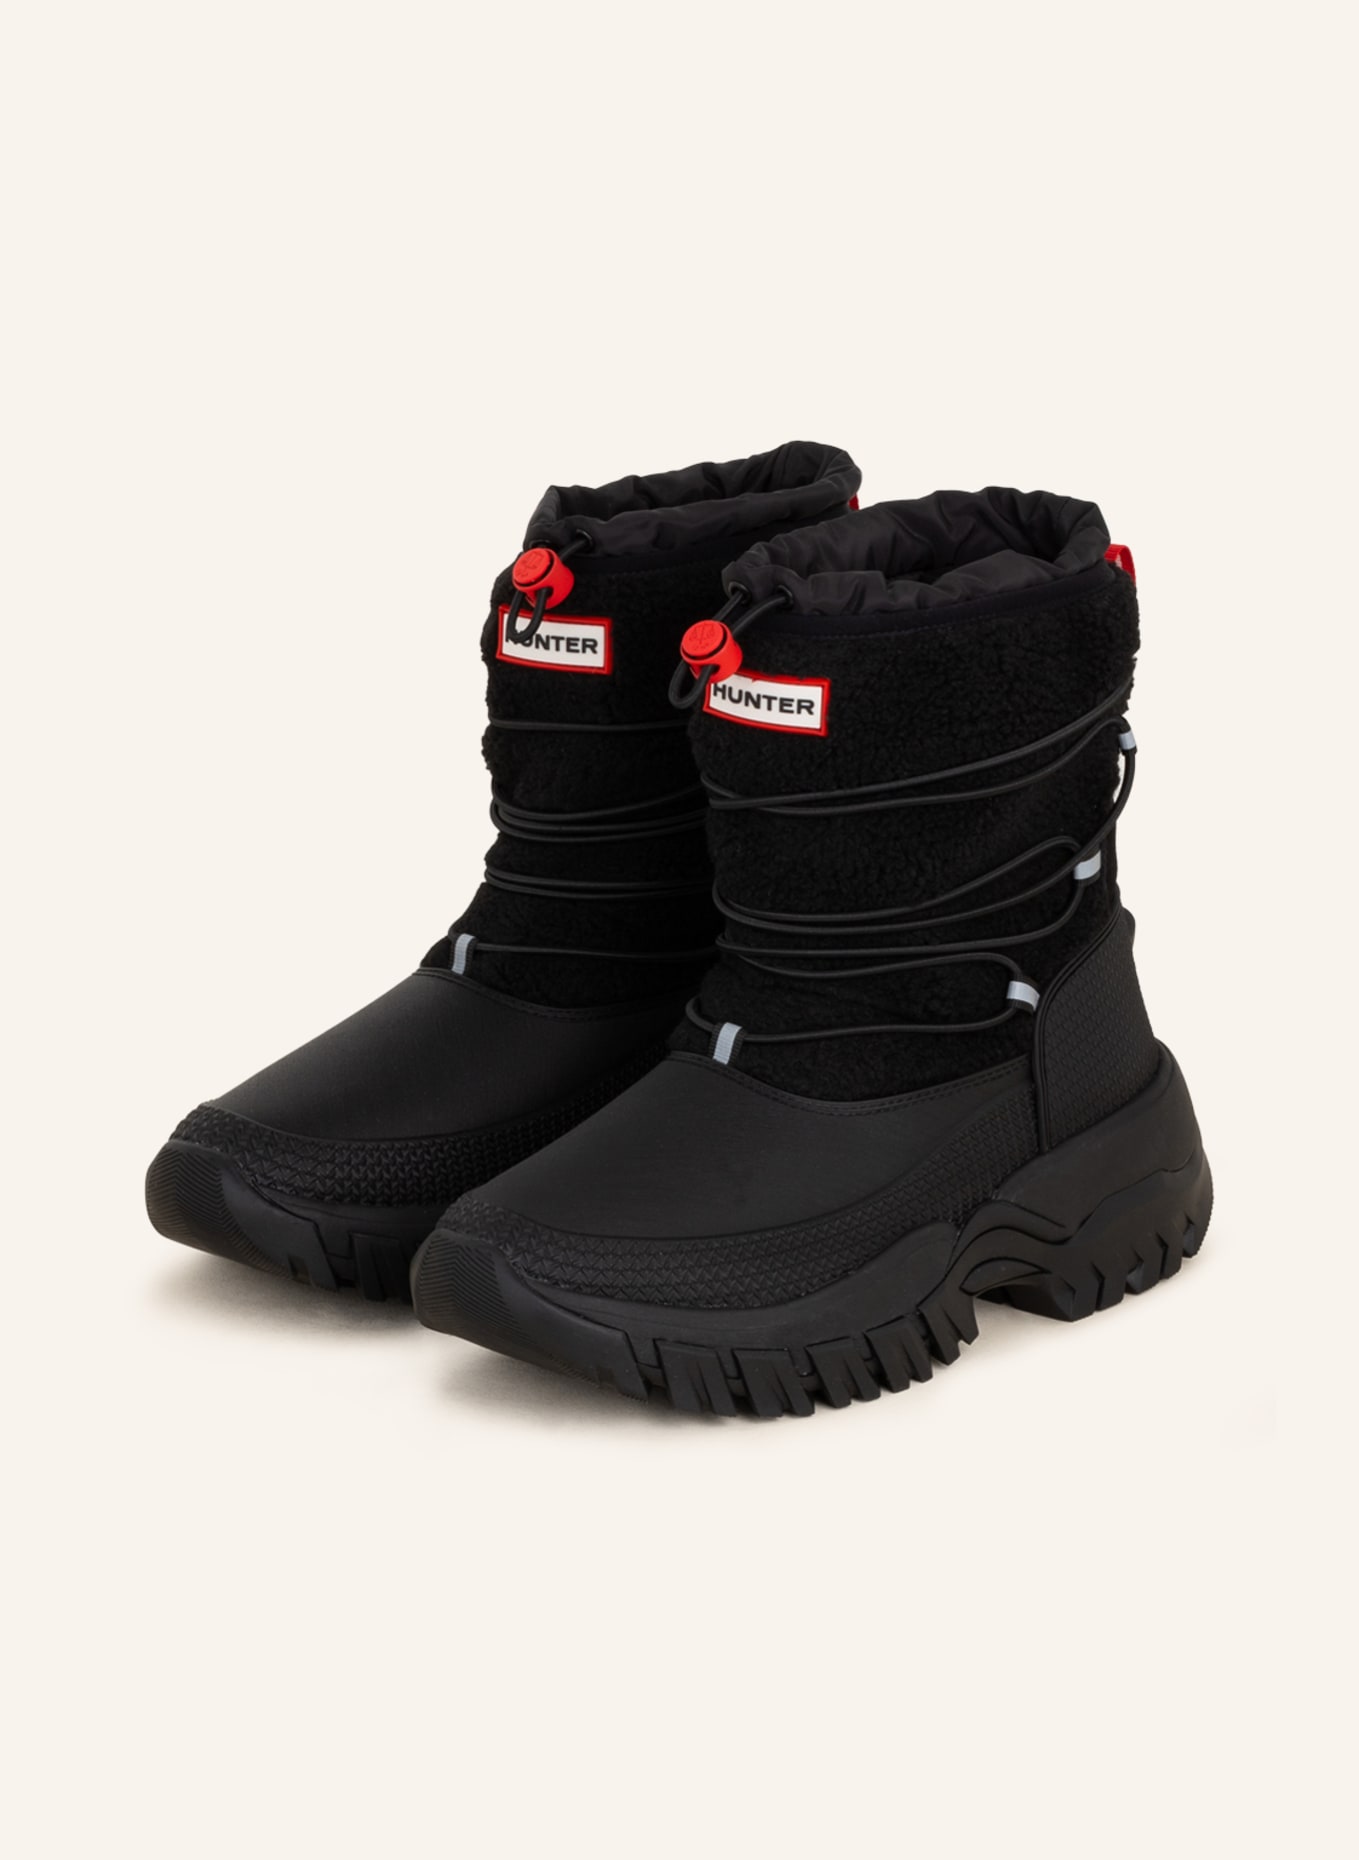 HUNTER Boots, Color: BLACK (Image 1)